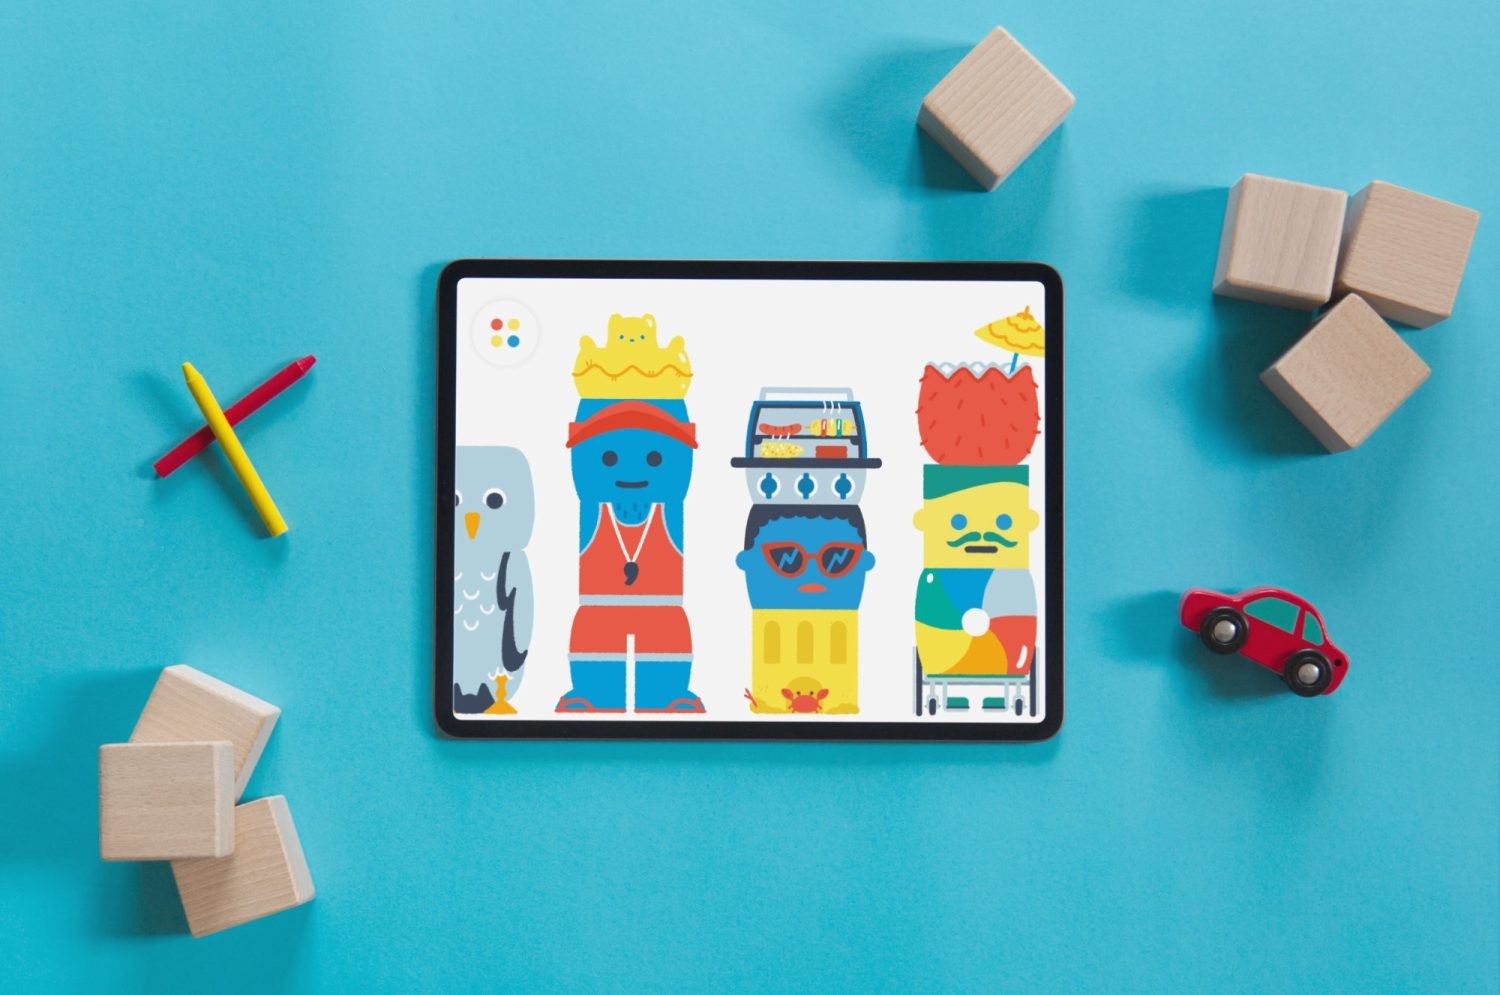 أطلق تطبيق Pok Pok Playroom لعبة Silly Blocks الصيفية المميزة